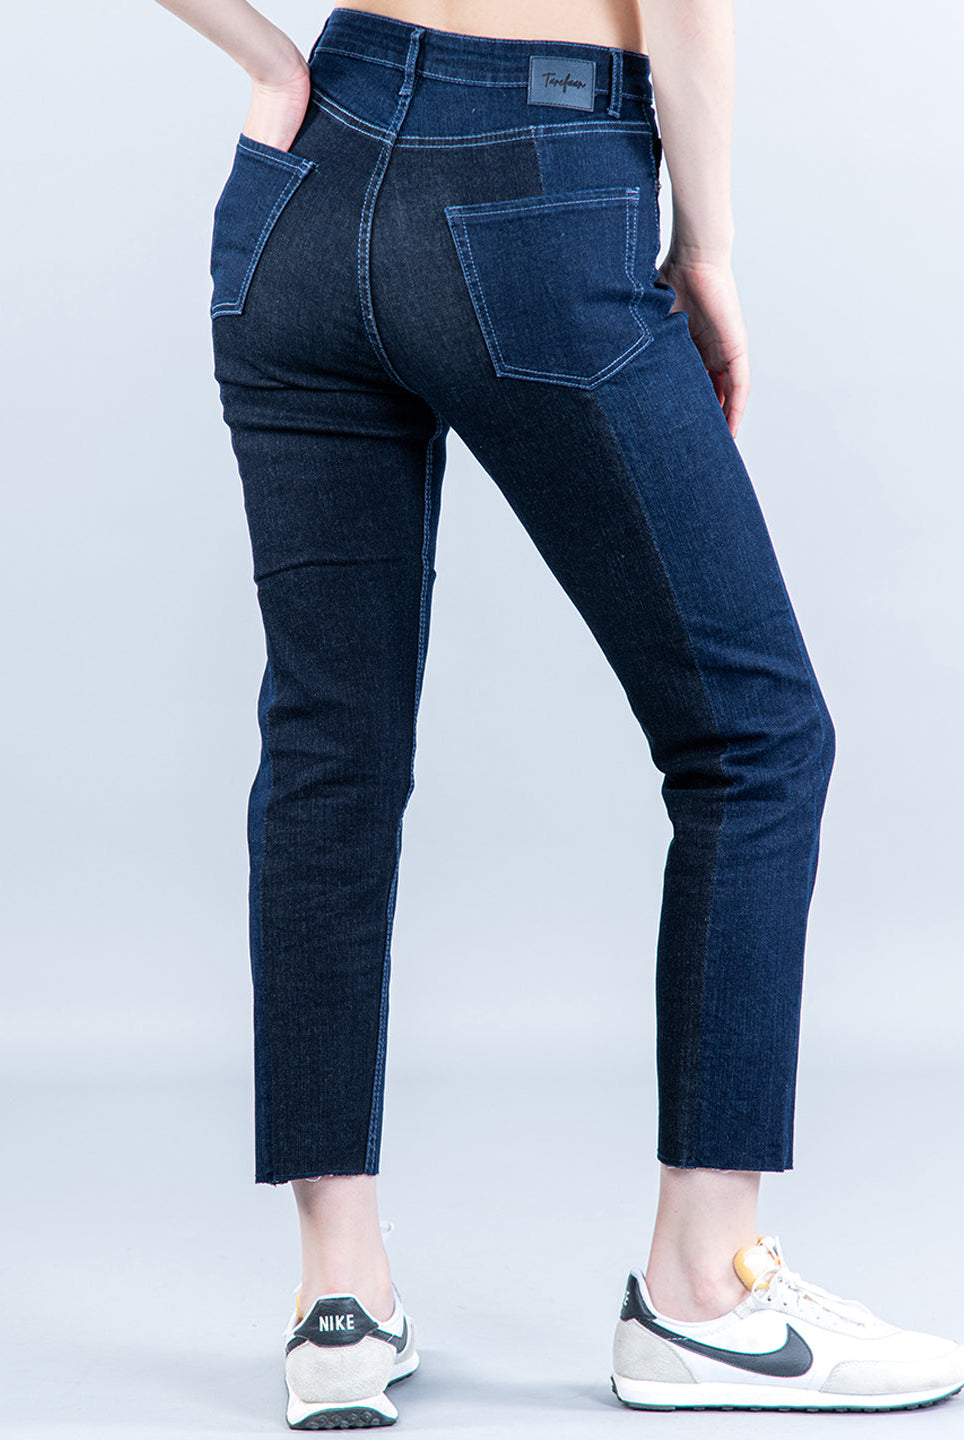 trending jeans for women